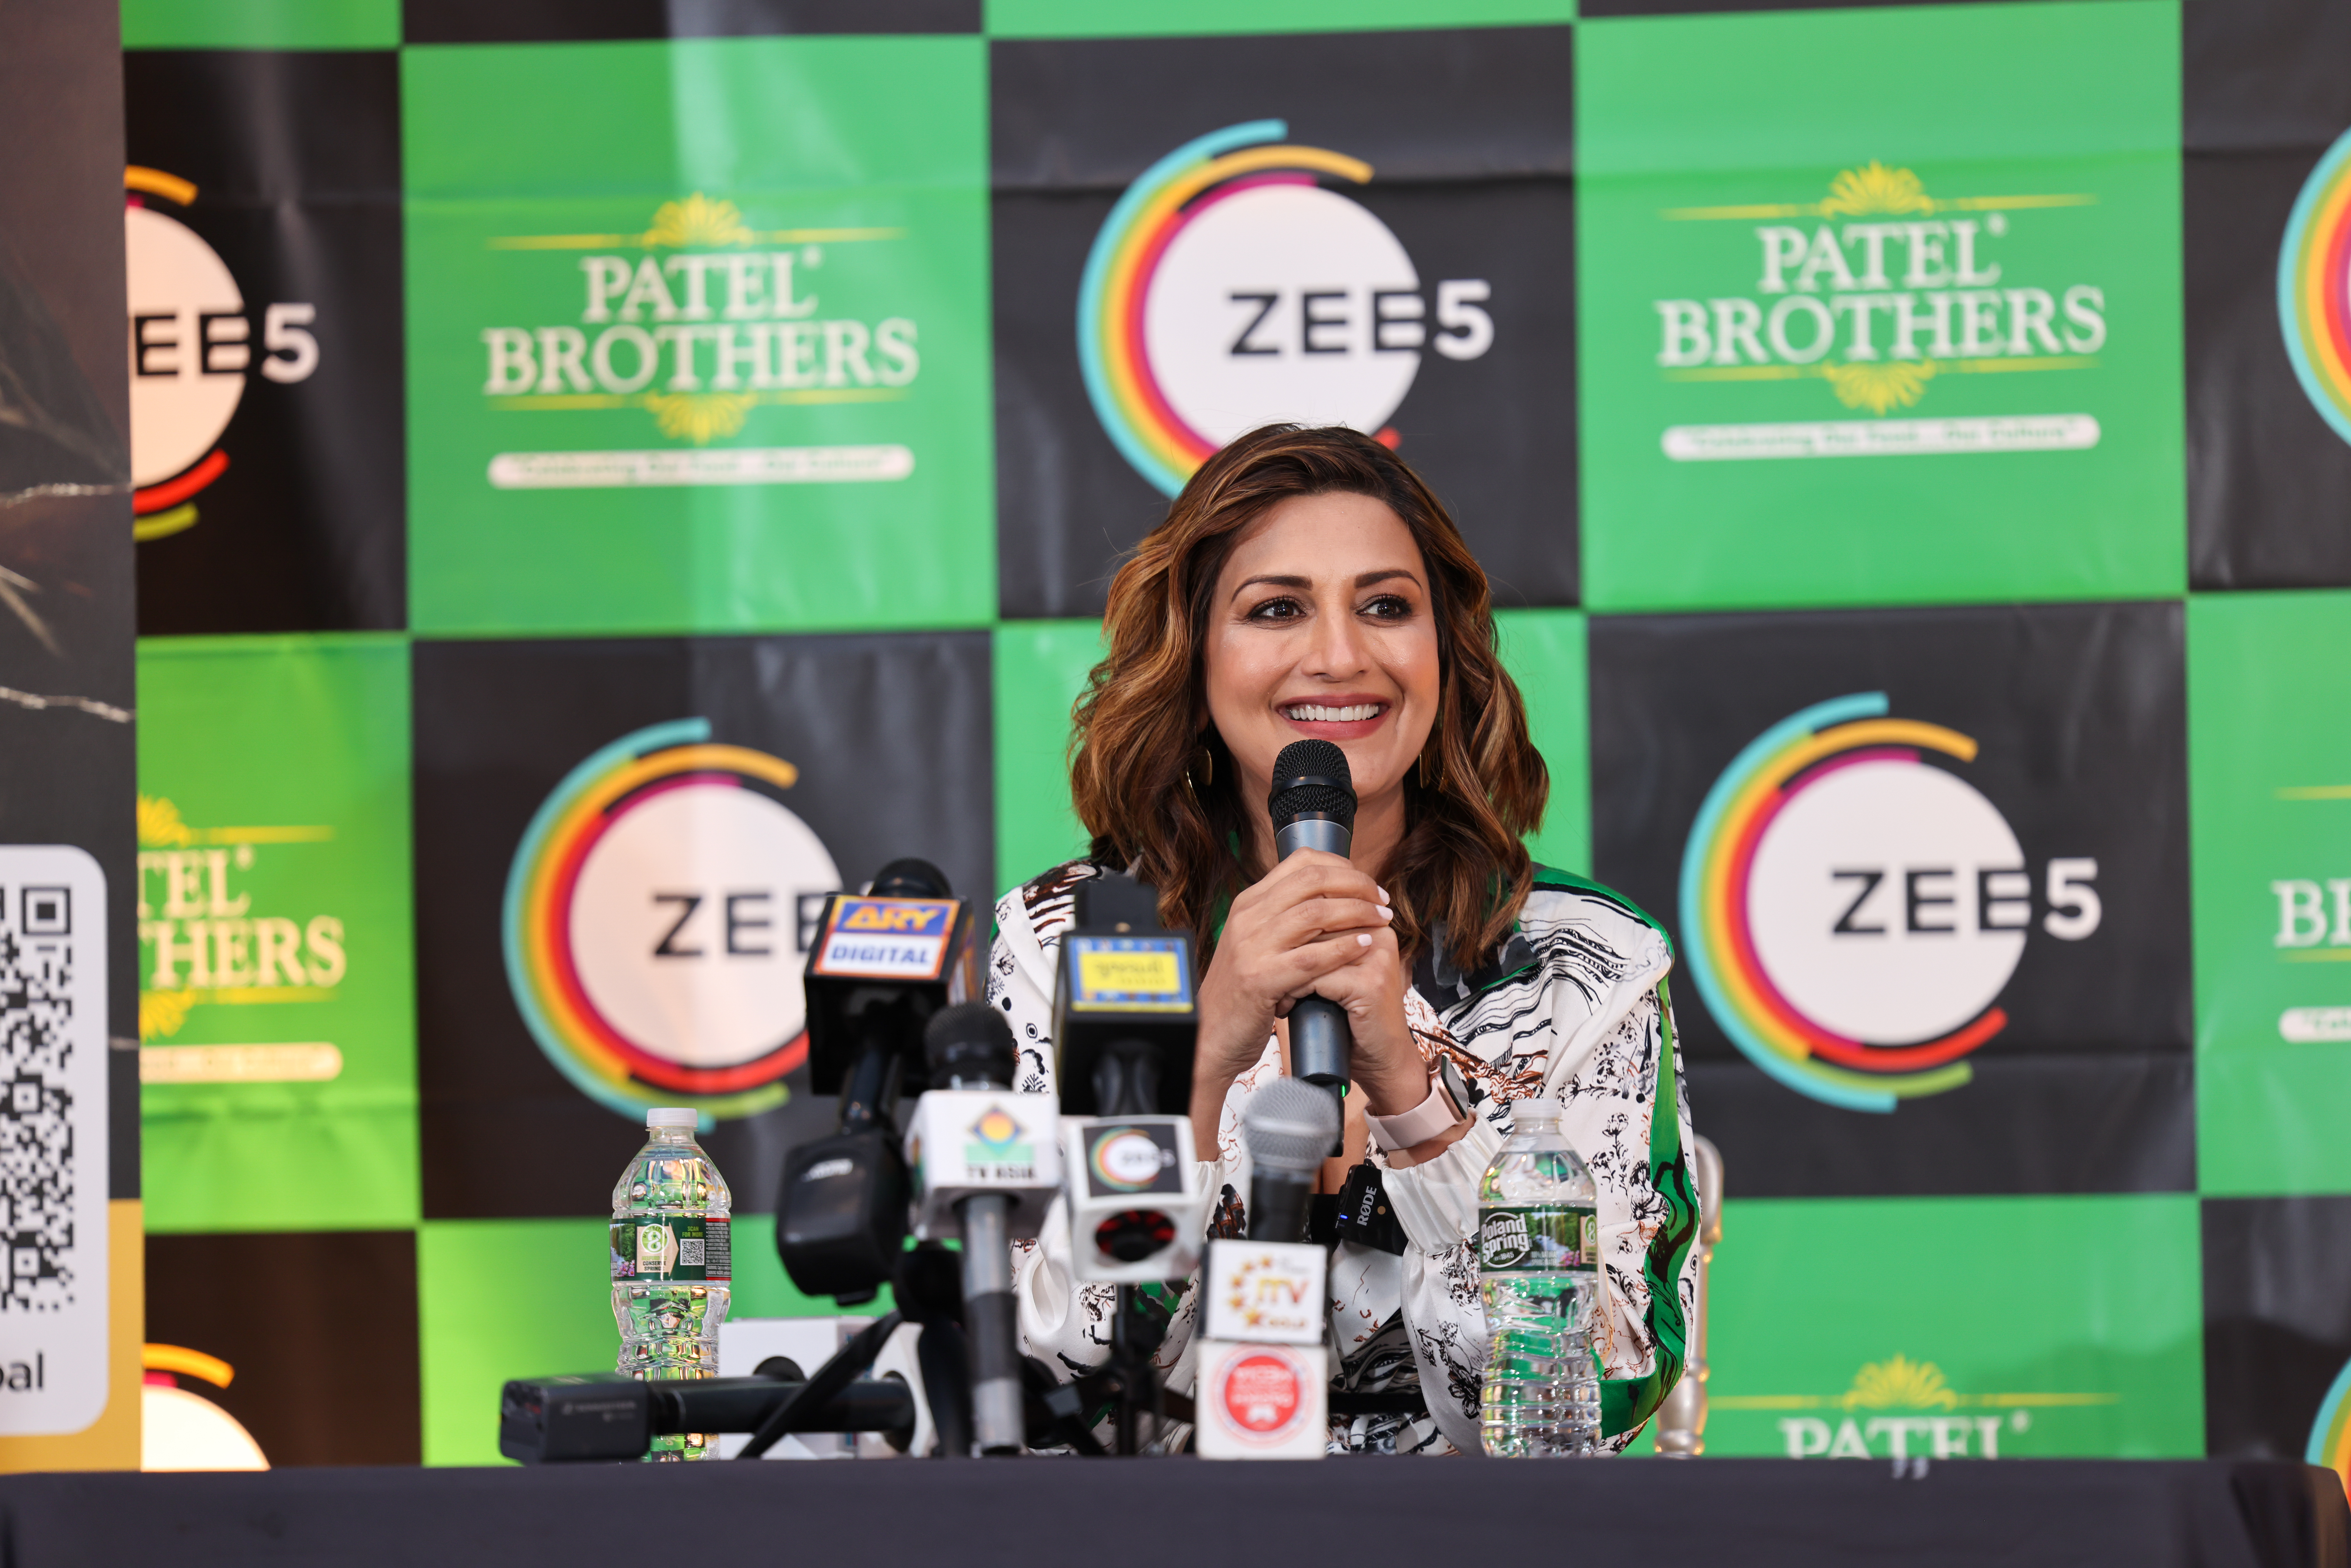 أعلنت ZEE5 Global عن شراكتها مع سلسلة متاجر البقالة الأقدم والأكبر والأكثر شهرة في أمريكا ، Patel Brothers.